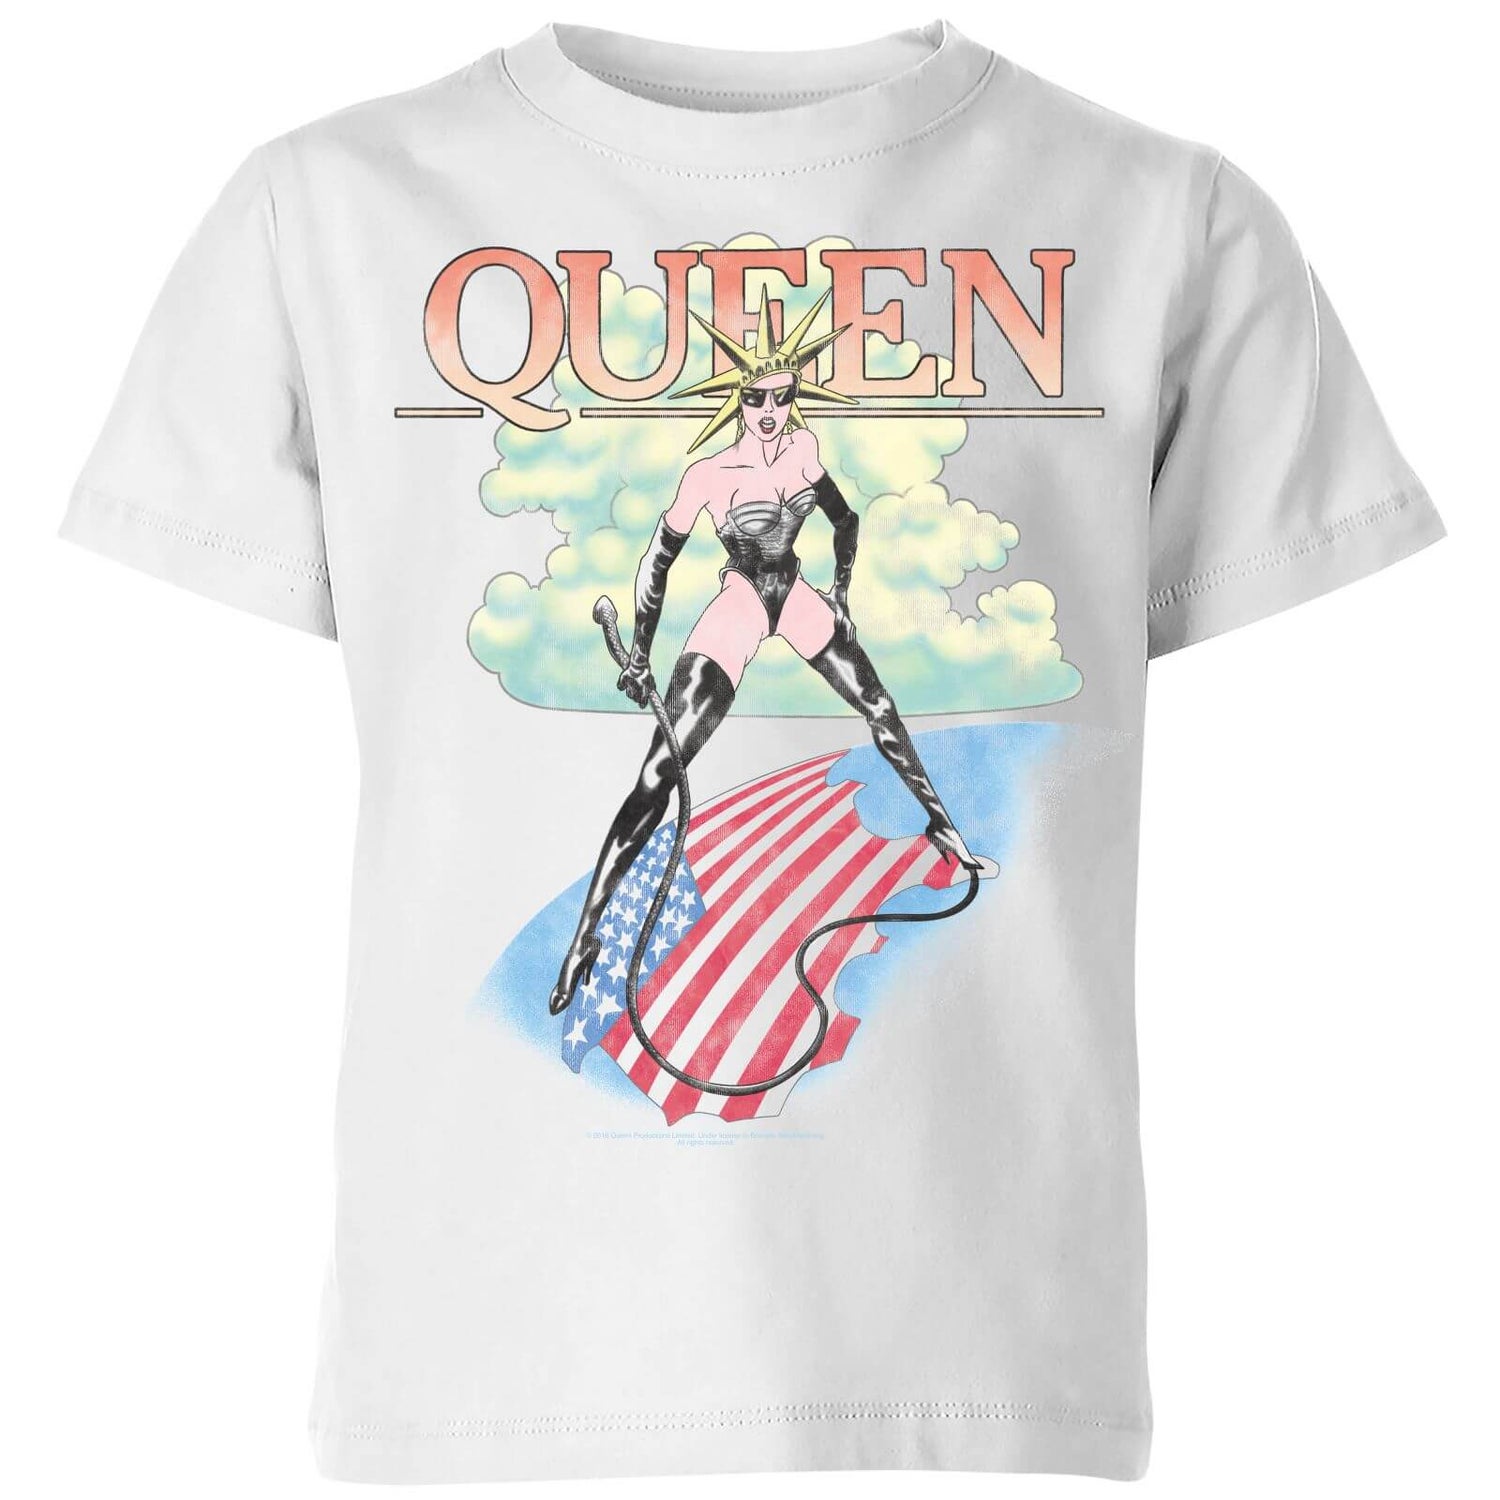 Baya trolebús Comercio Camiseta para niño Vintage Tour de Queen - Blanco Clothing | Zavvi España